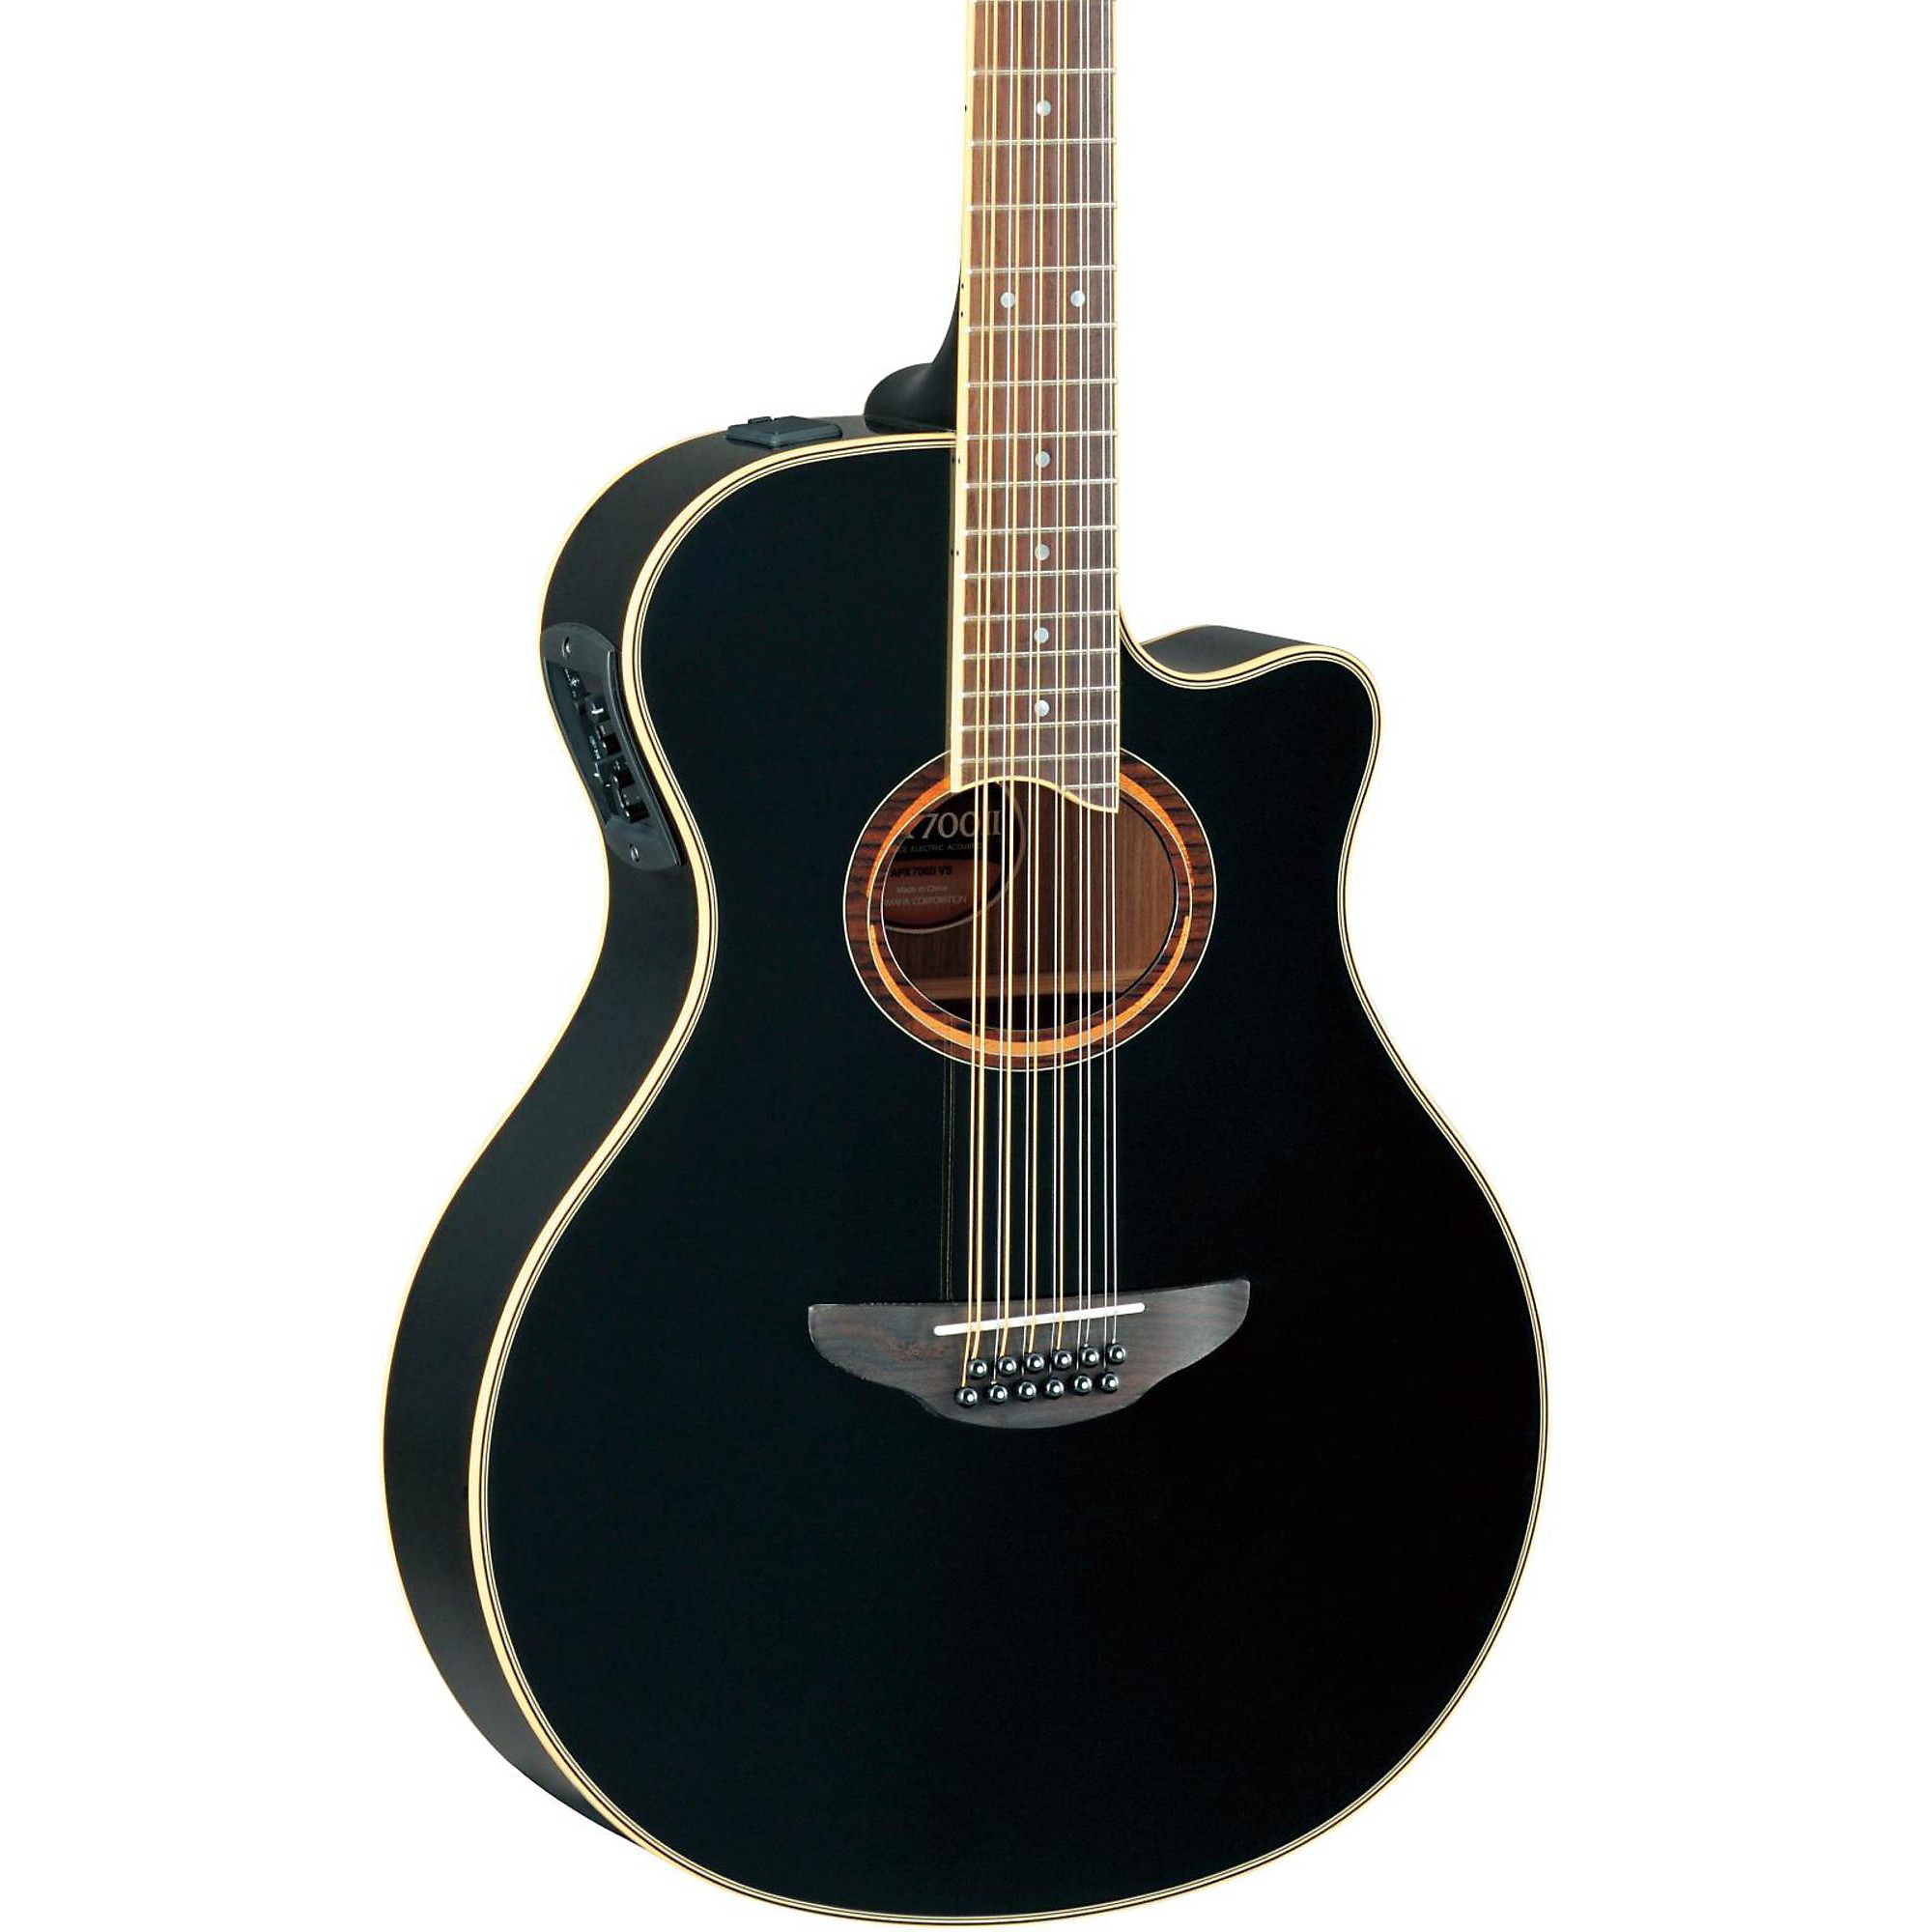 Yamaha APX700II-12 Thinline 12-струнная акусто-электрическая гитара с вырезом, черная yamaha apx700ii 12 thinline acoustic electric 12 струнная гитара с вырезом натуральный цвет apx700ii 12 thinline acoustic electric cutaway 12 string guitar